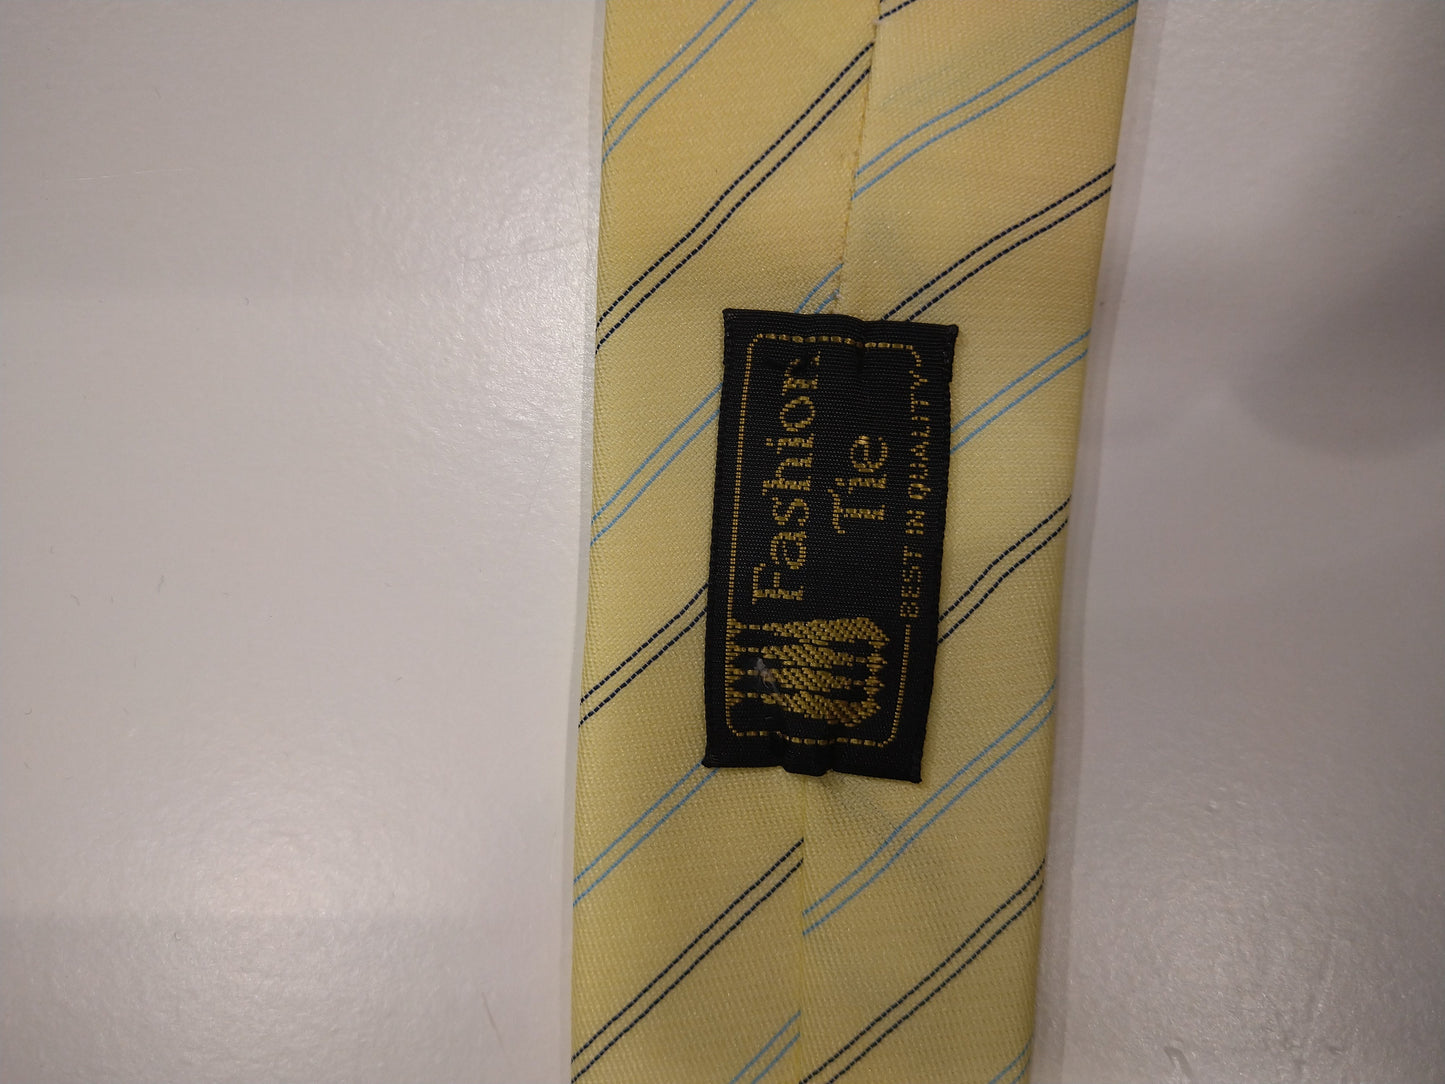 Cravatta di moda vintage extra stretta cravatta. Strisce di nero blu giallo.